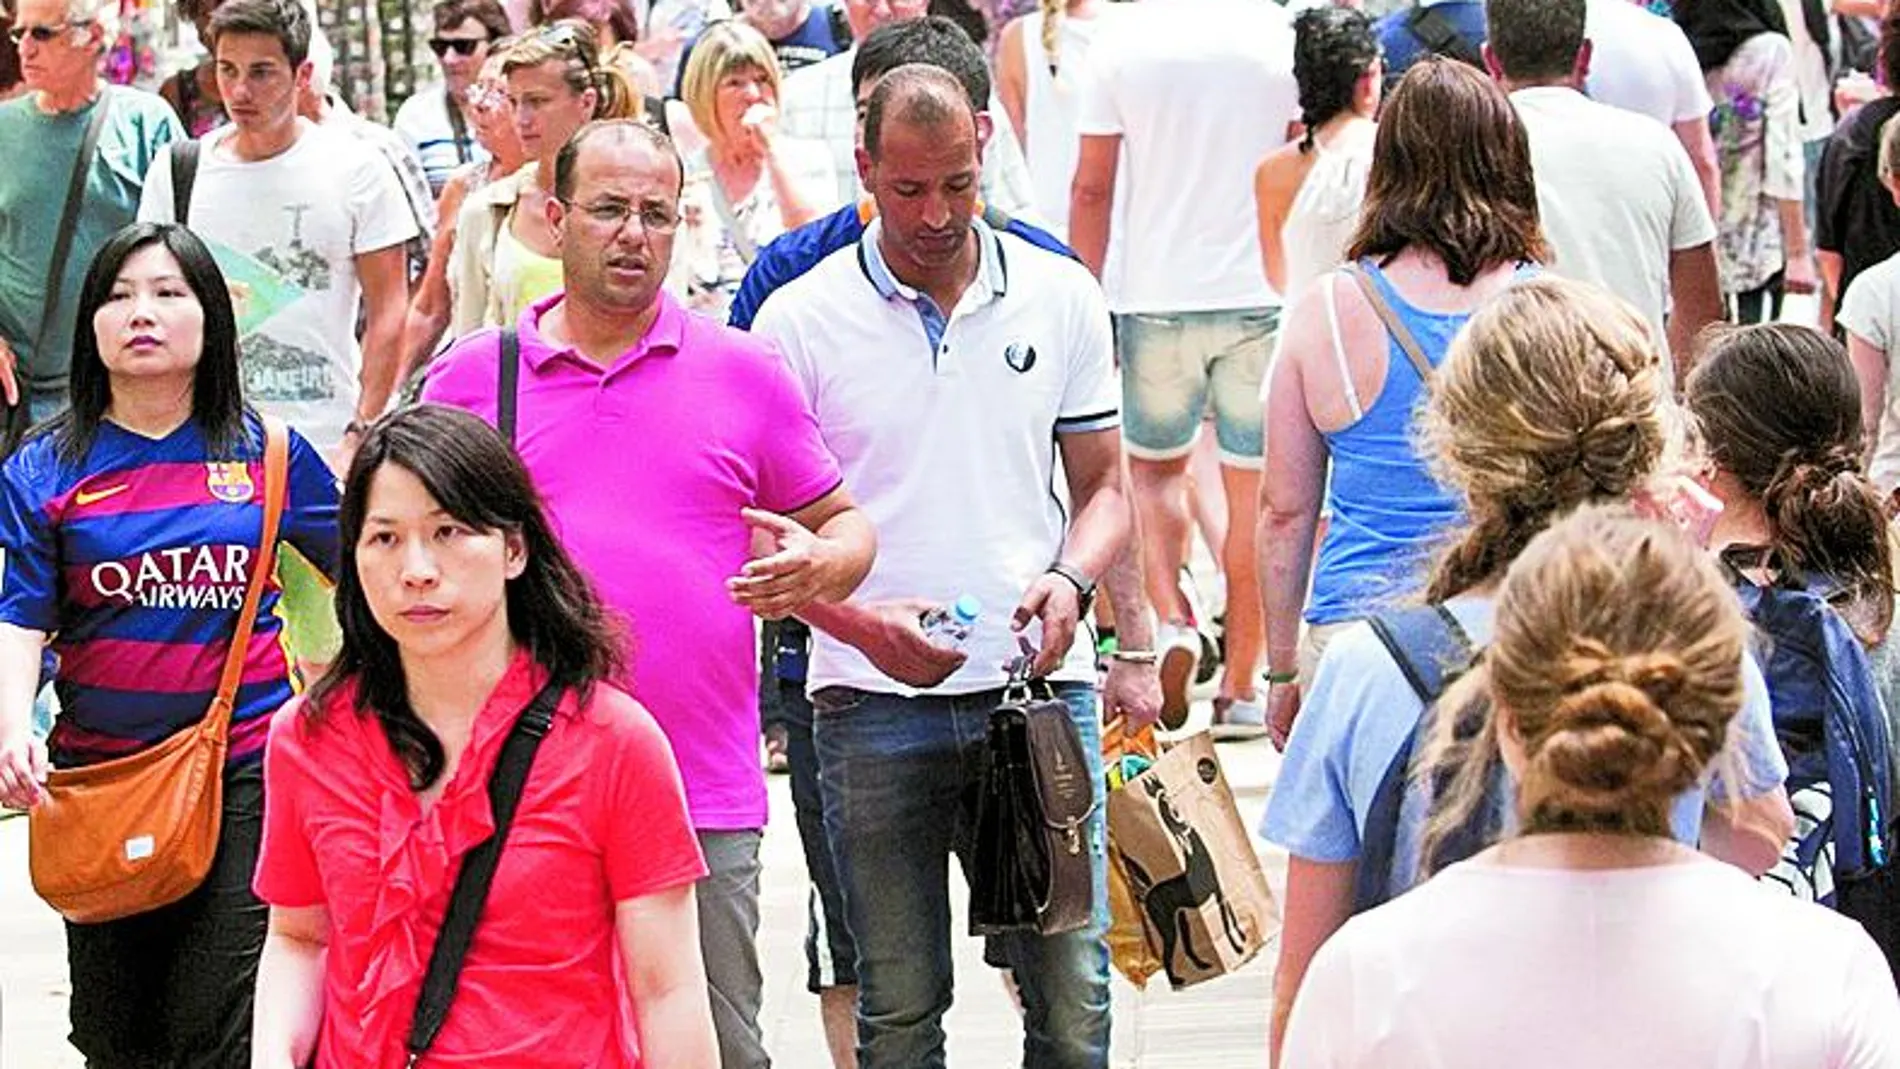 Un 58% de los visitantes advierte que la ciudad está demasiado llena de gente como para hacer actividades turísticas.